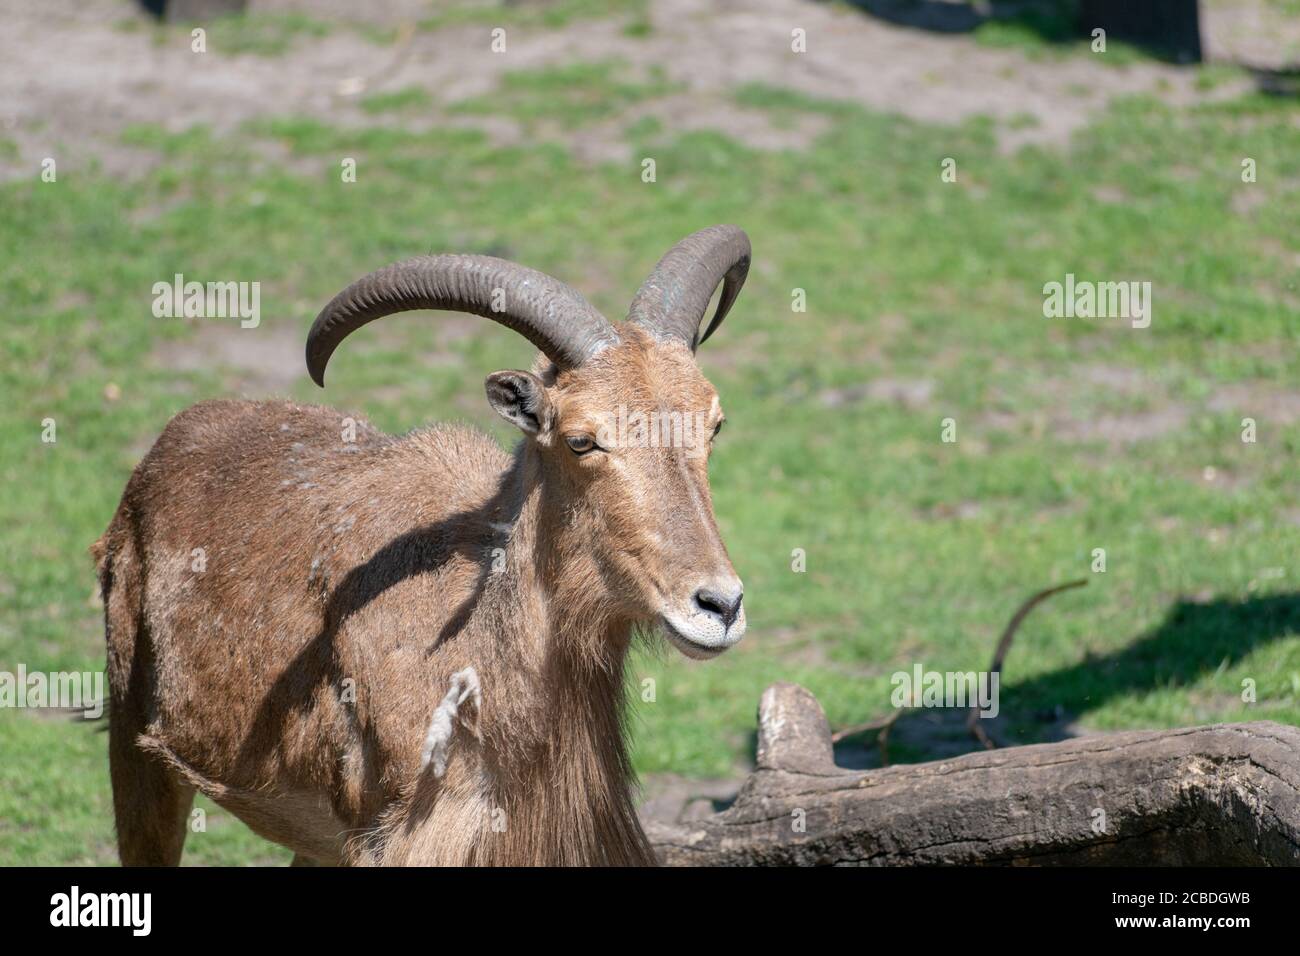 Nahaufnahme eines Barbaren Schafes oder aoudad in einem Zoo Bei Tageslicht Stockfoto